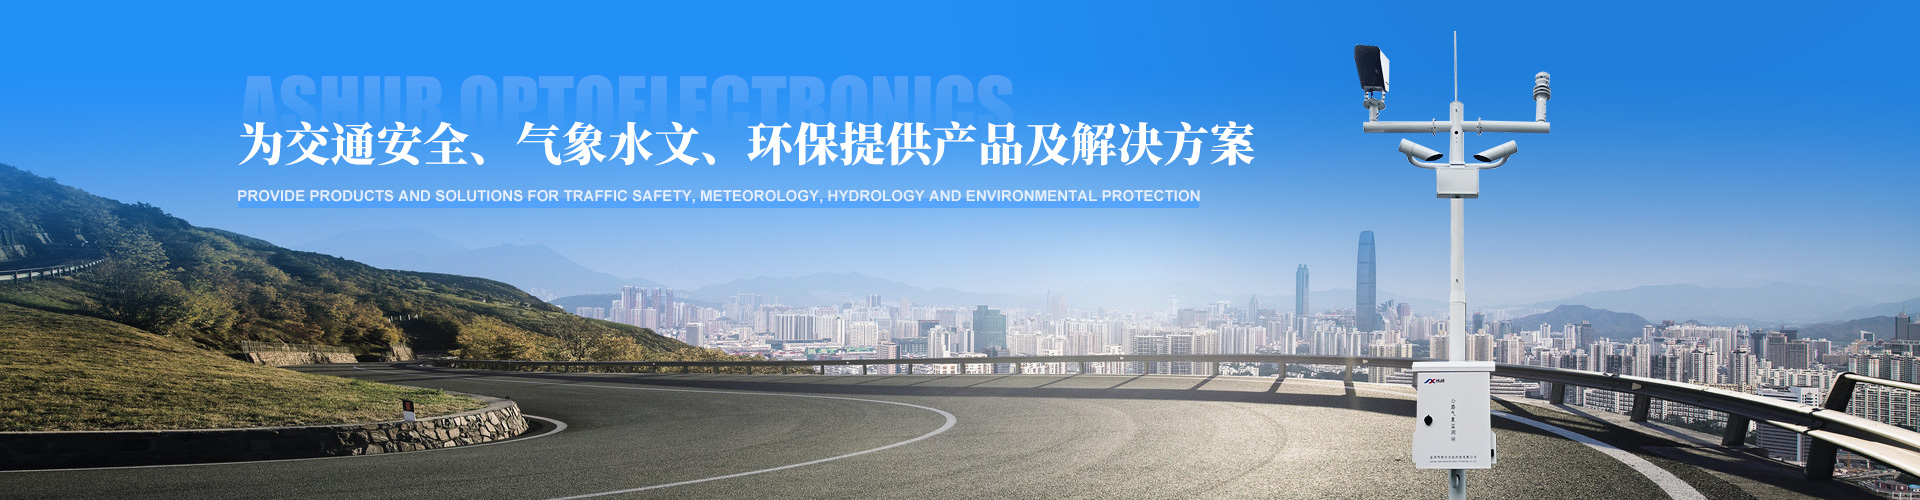 阿舒爾應邀參加第24屆中國高速公路信息化大會